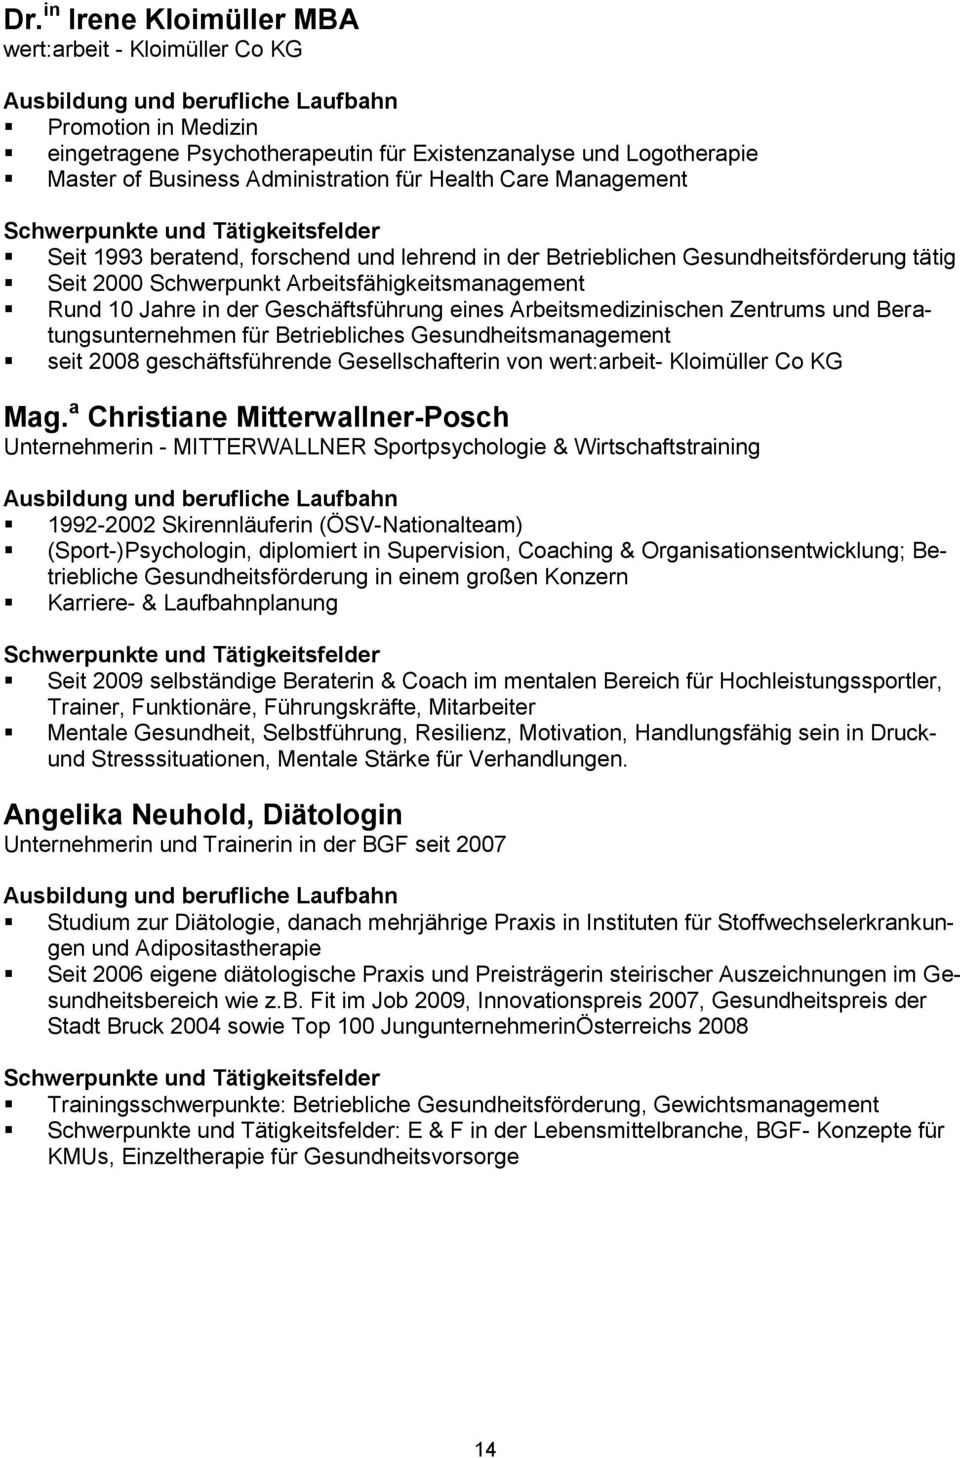 Arbeitsmedizinischen Zentrums und Beratungsunternehmen für Betriebliches Gesundheitsmanagement seit 2008 geschäftsführende Gesellschafterin von wert:arbeit- Kloimüller Co KG Mag.